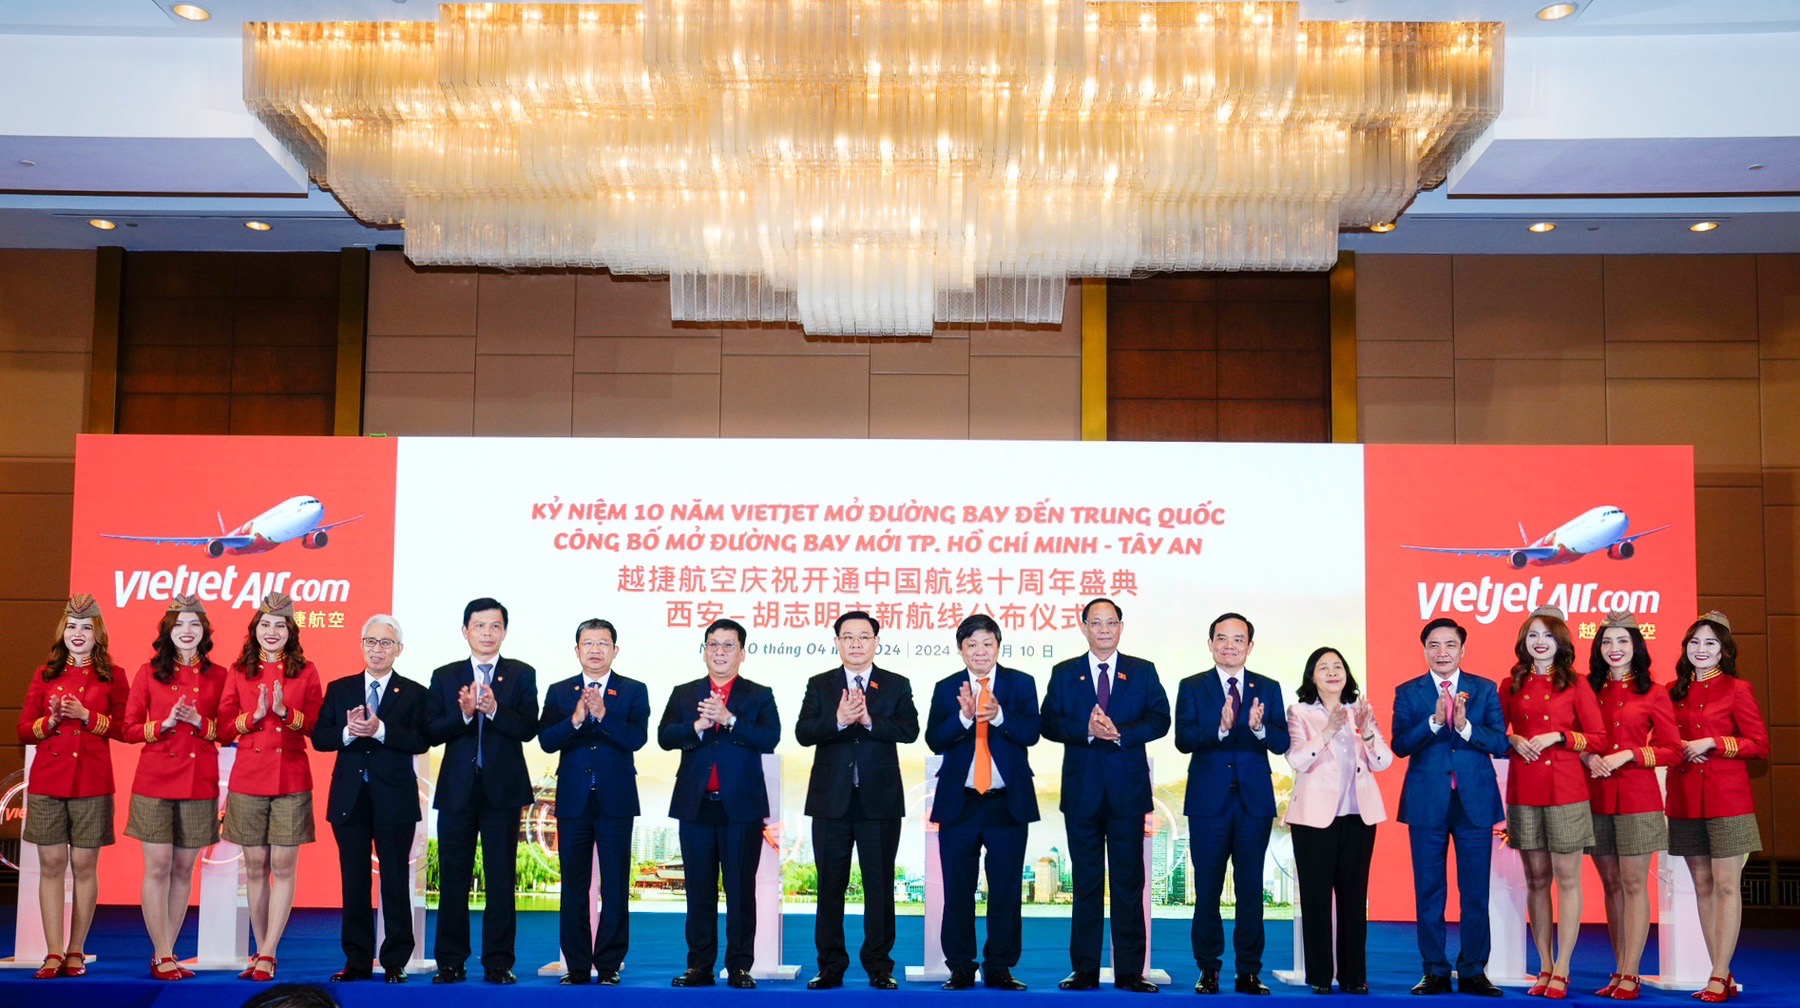 Chủ tịch Quốc hội Vương Đình Huệ cùng đoàn lãnh đạo cấp cao Việt Nam - Trung Quốc tham dự lễ kỷ niệm 10 năm bay Trung Quốc và công bố đường bay TP Hồ Chí Minh - Tây An của Vietjet